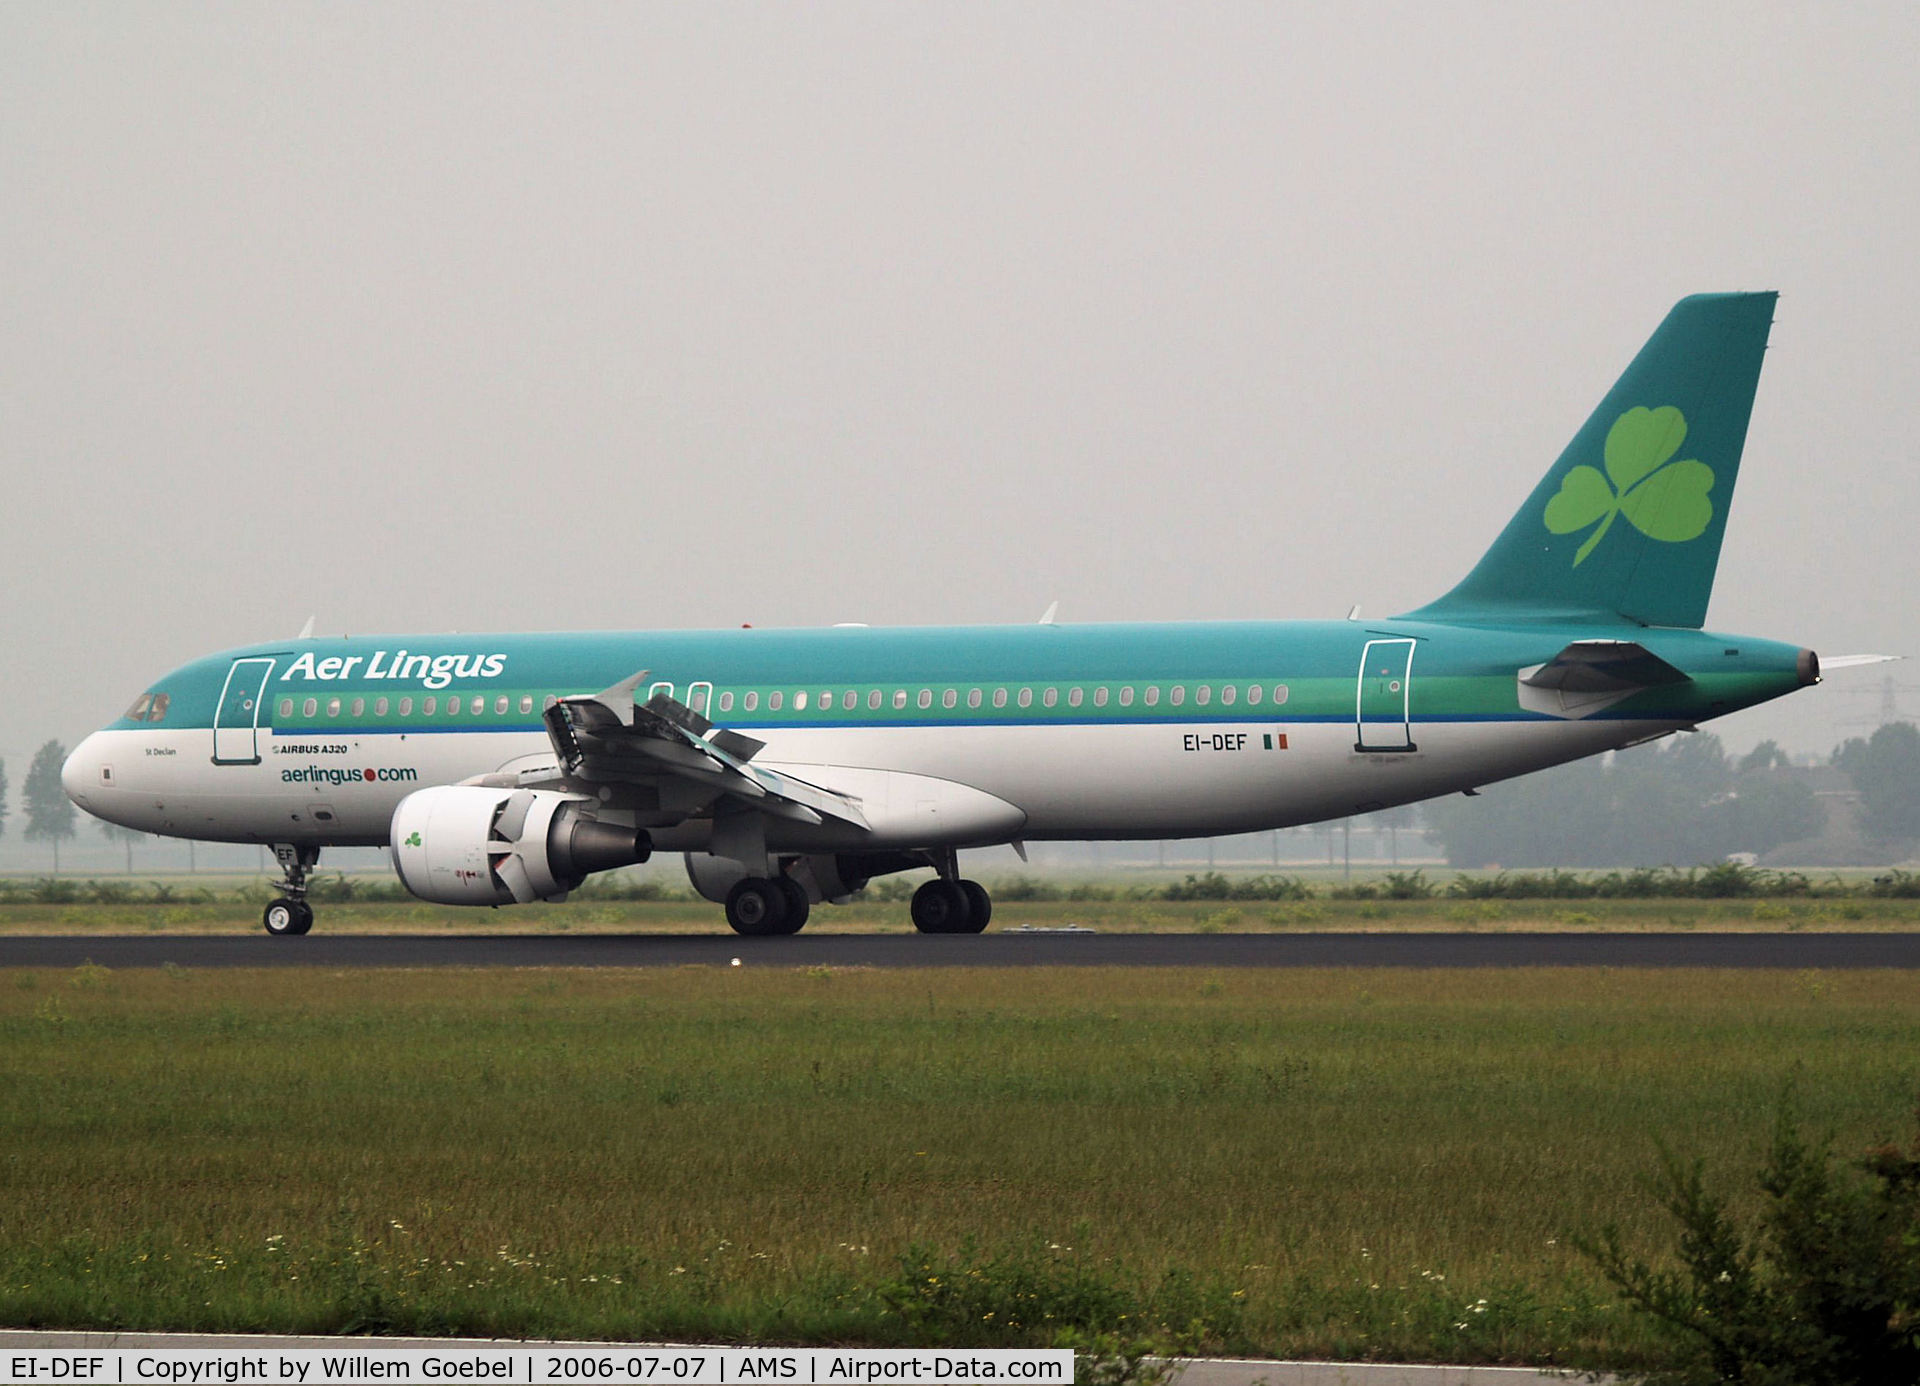 EI-DEF, 2004 Airbus A320-214 C/N 2256, Landing on runway R18 of Amsterdam Airport